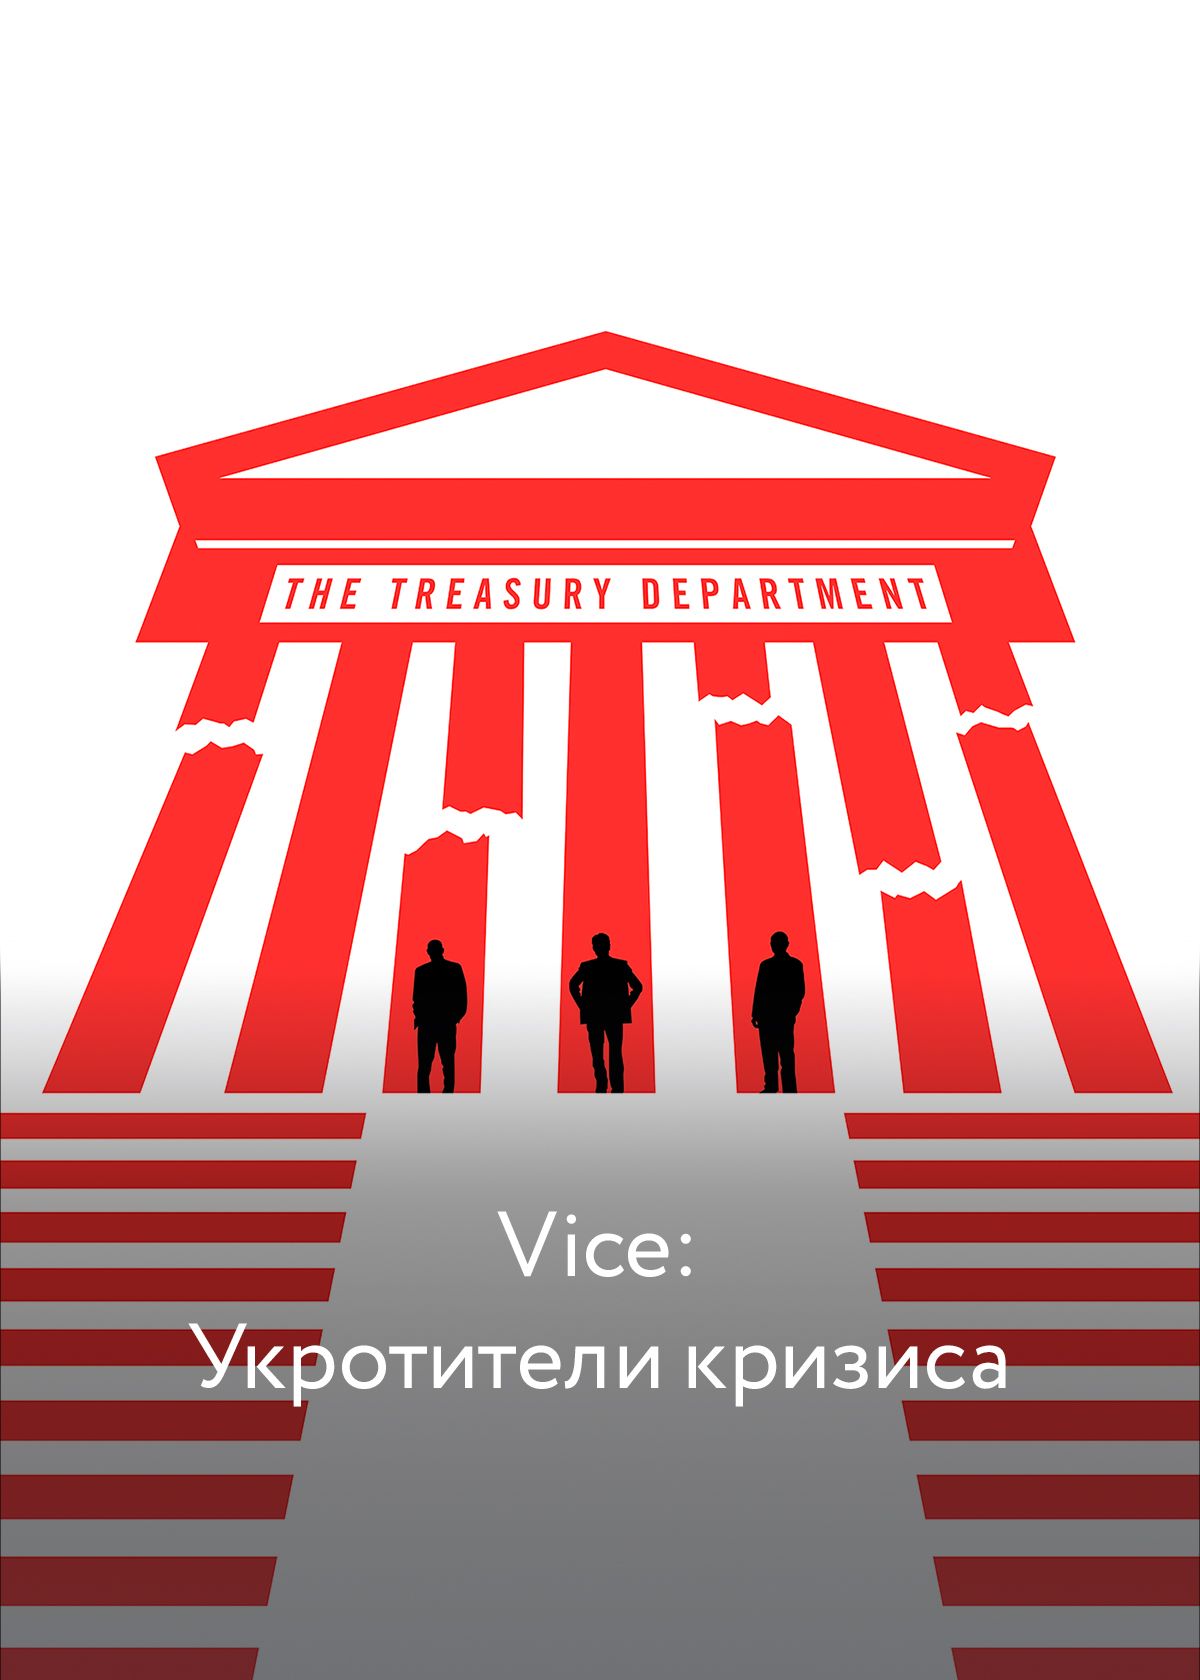 Vice: Укротители кризиса